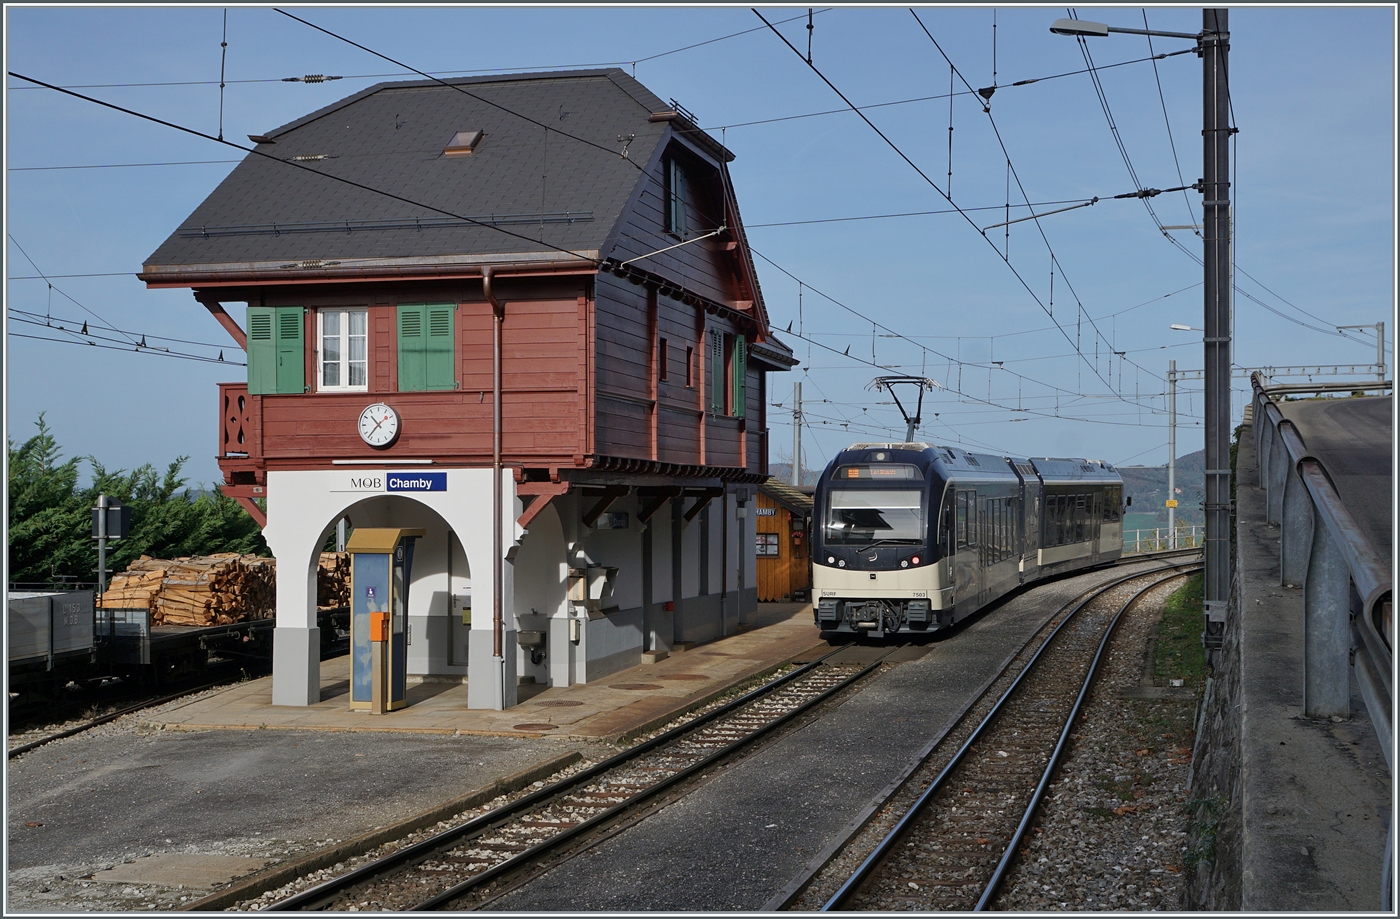 Der CEV MVR ABeh 2/6 7503  Blonay-Chamby  verlässt als Regionalzug Montreux - Les Avants den Bahnhof Chamby, wo des Empfgangsgebäude sehr schön renoviert wurde. 

29. Okt. 2022